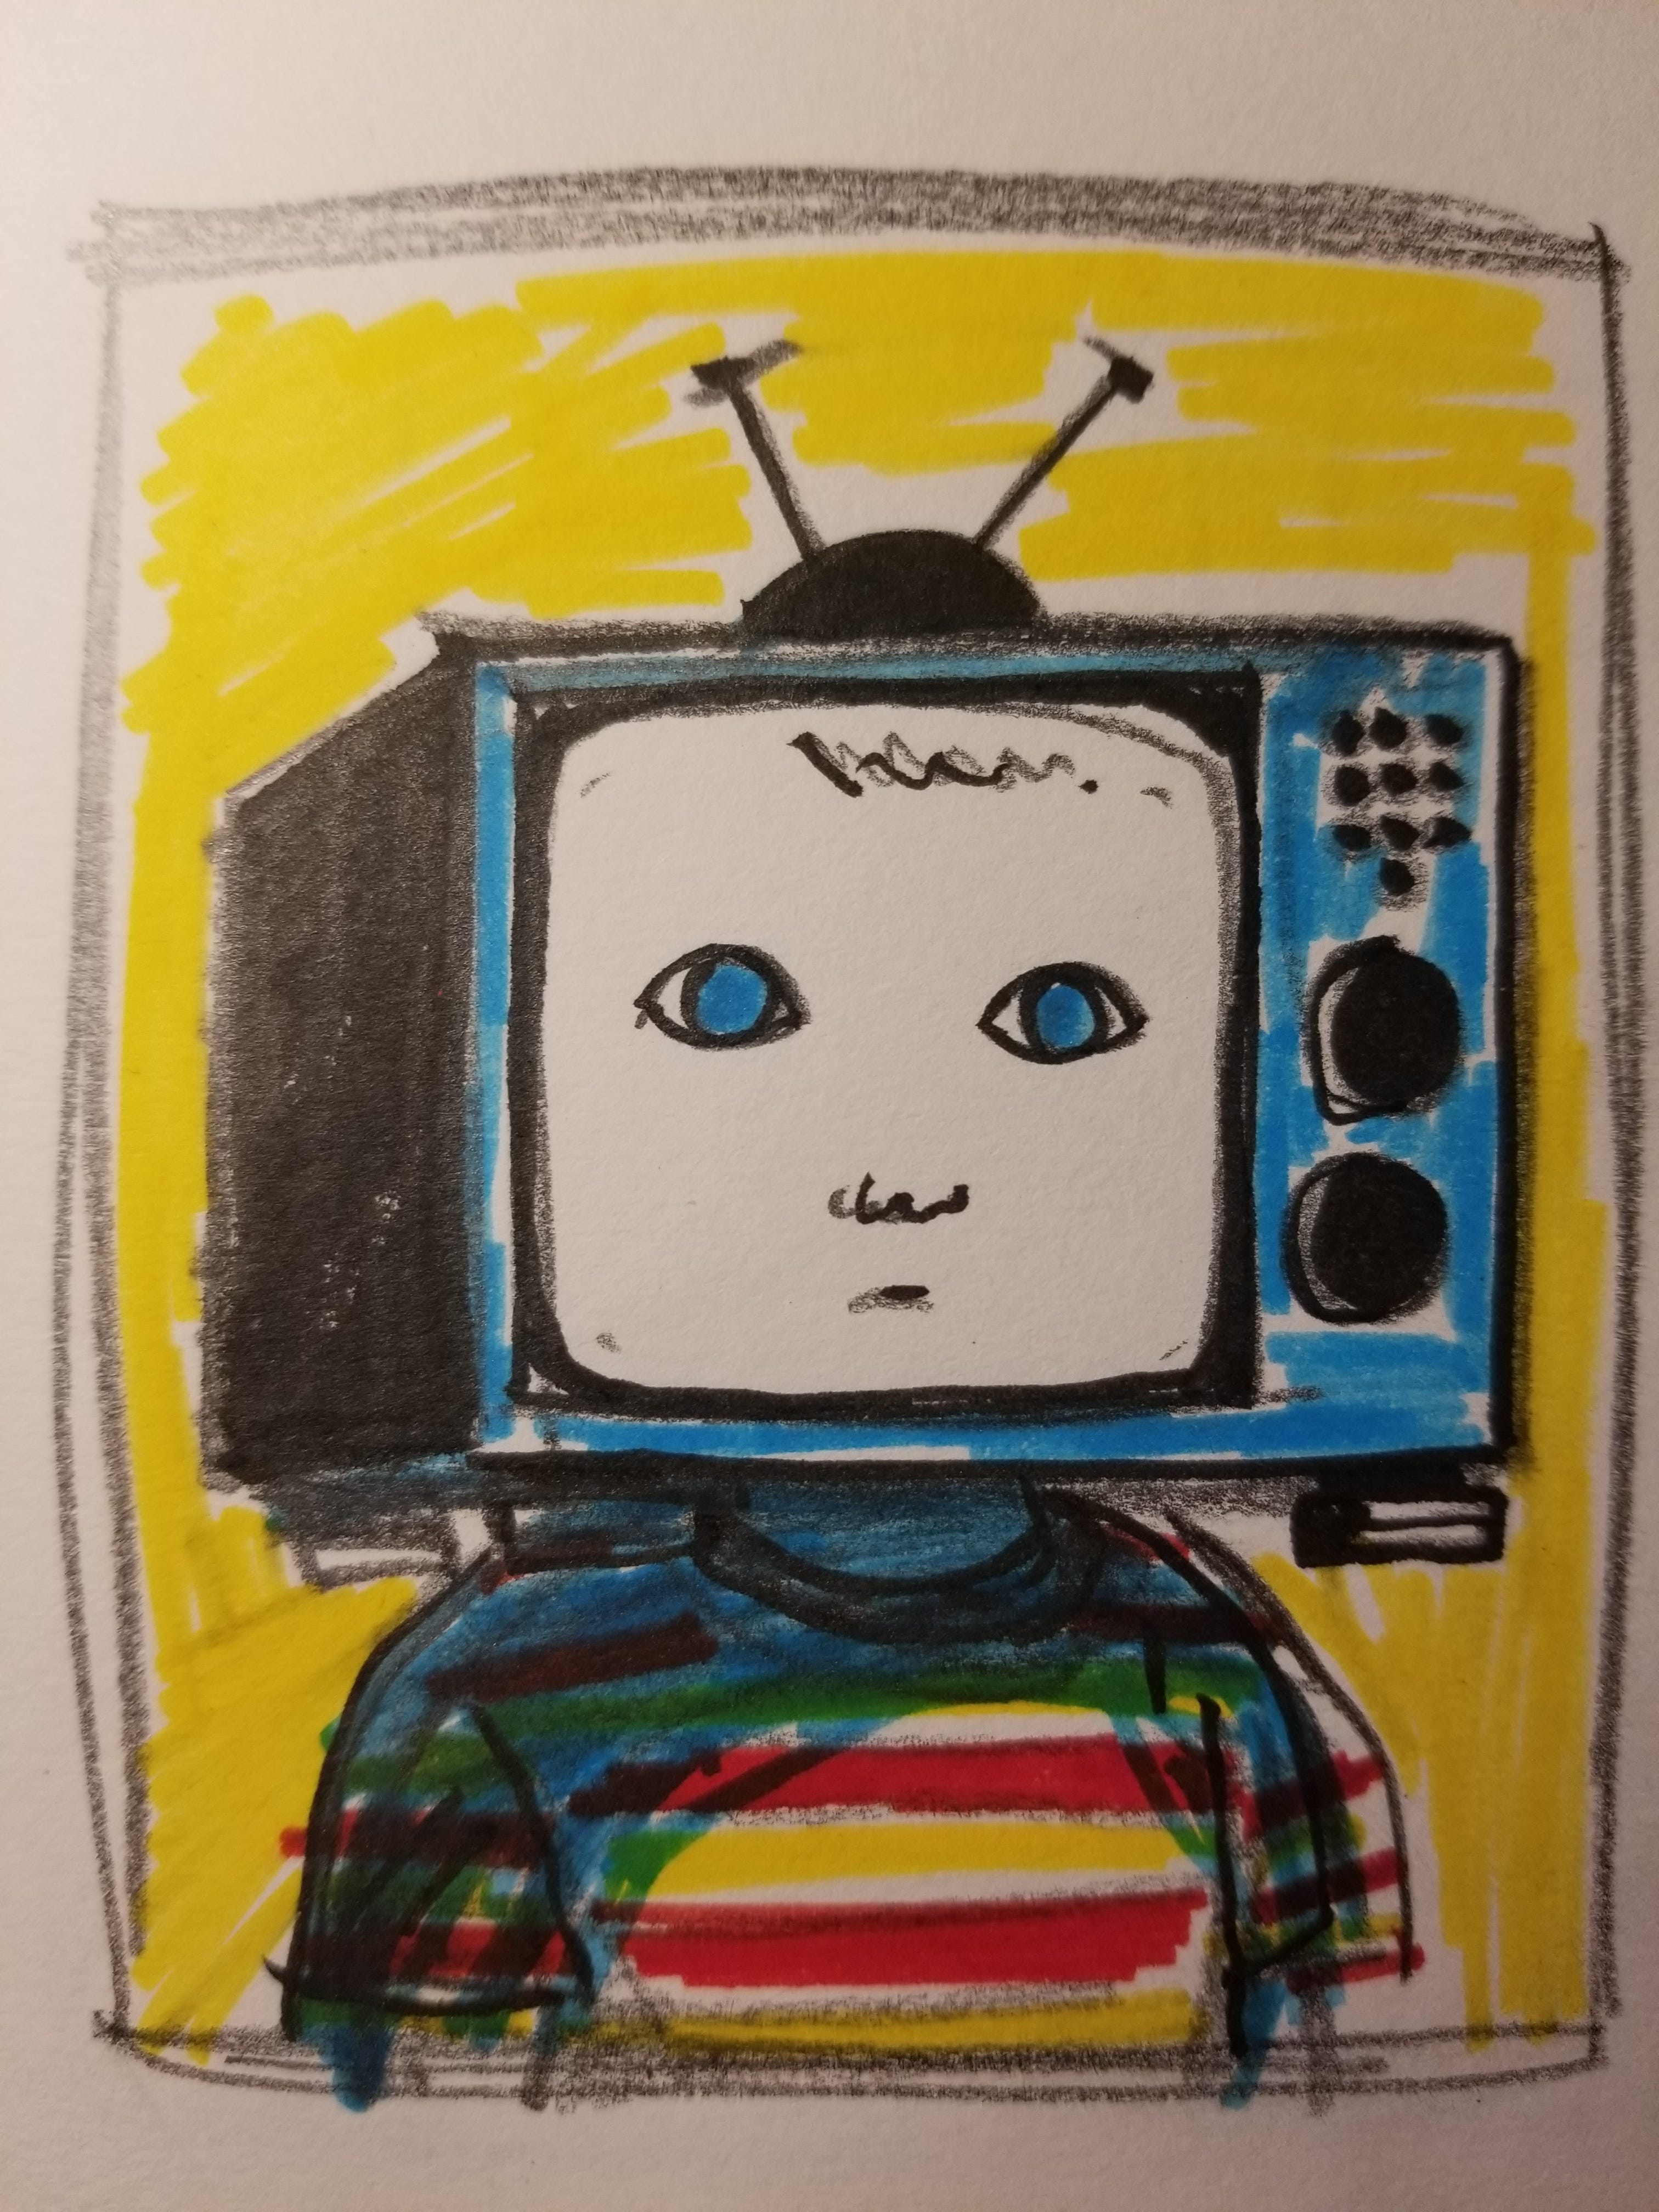 Process(2)- TV head, AI artist, NY subway